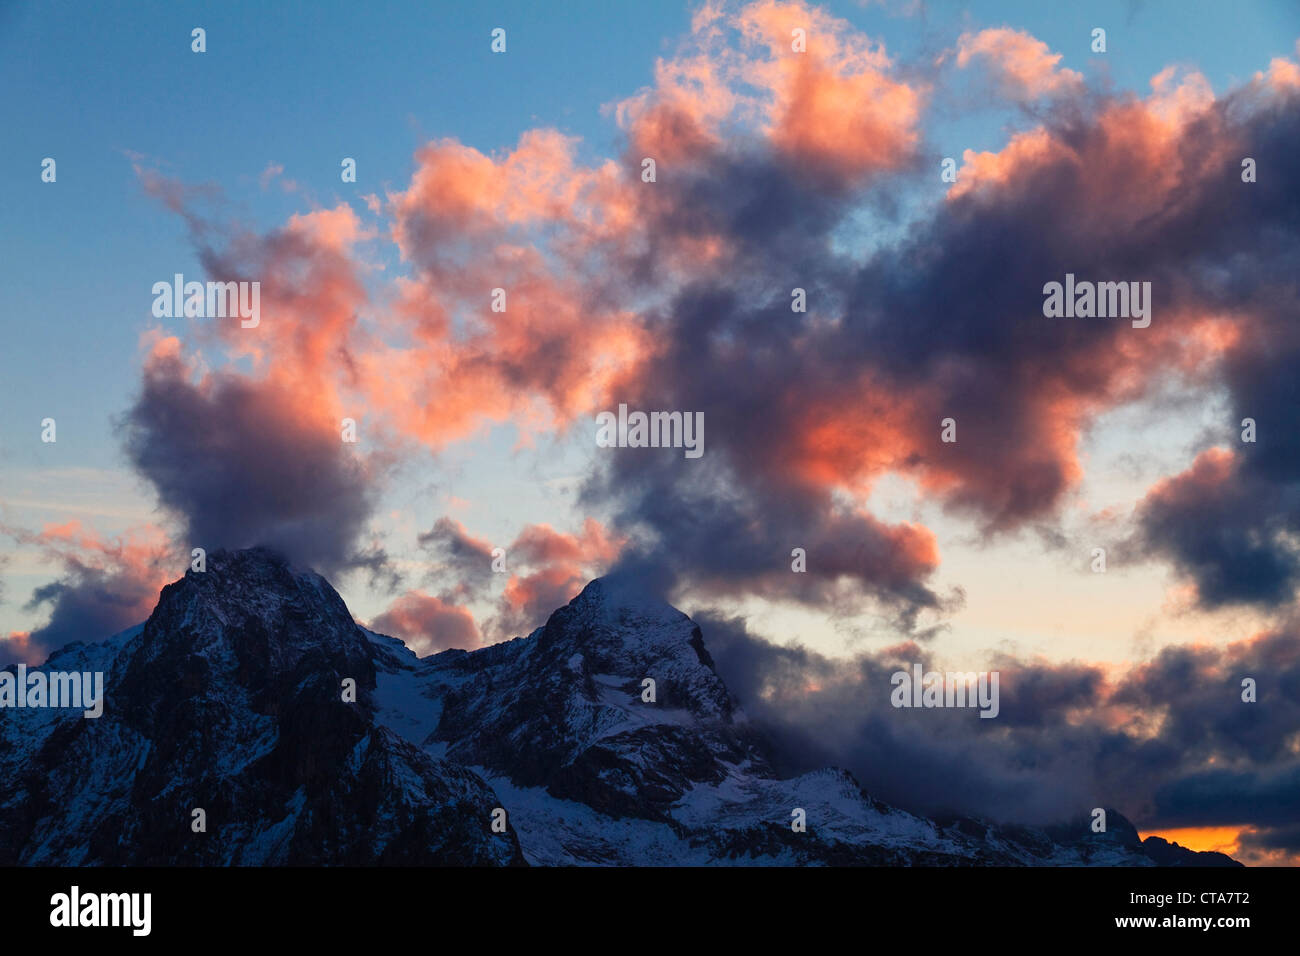 Clouds at sunset over Hochblassen und Alpspitze mountains, view from Schachen mountain, Wetterstein mountains, Alps, Upper Bavar Stock Photo